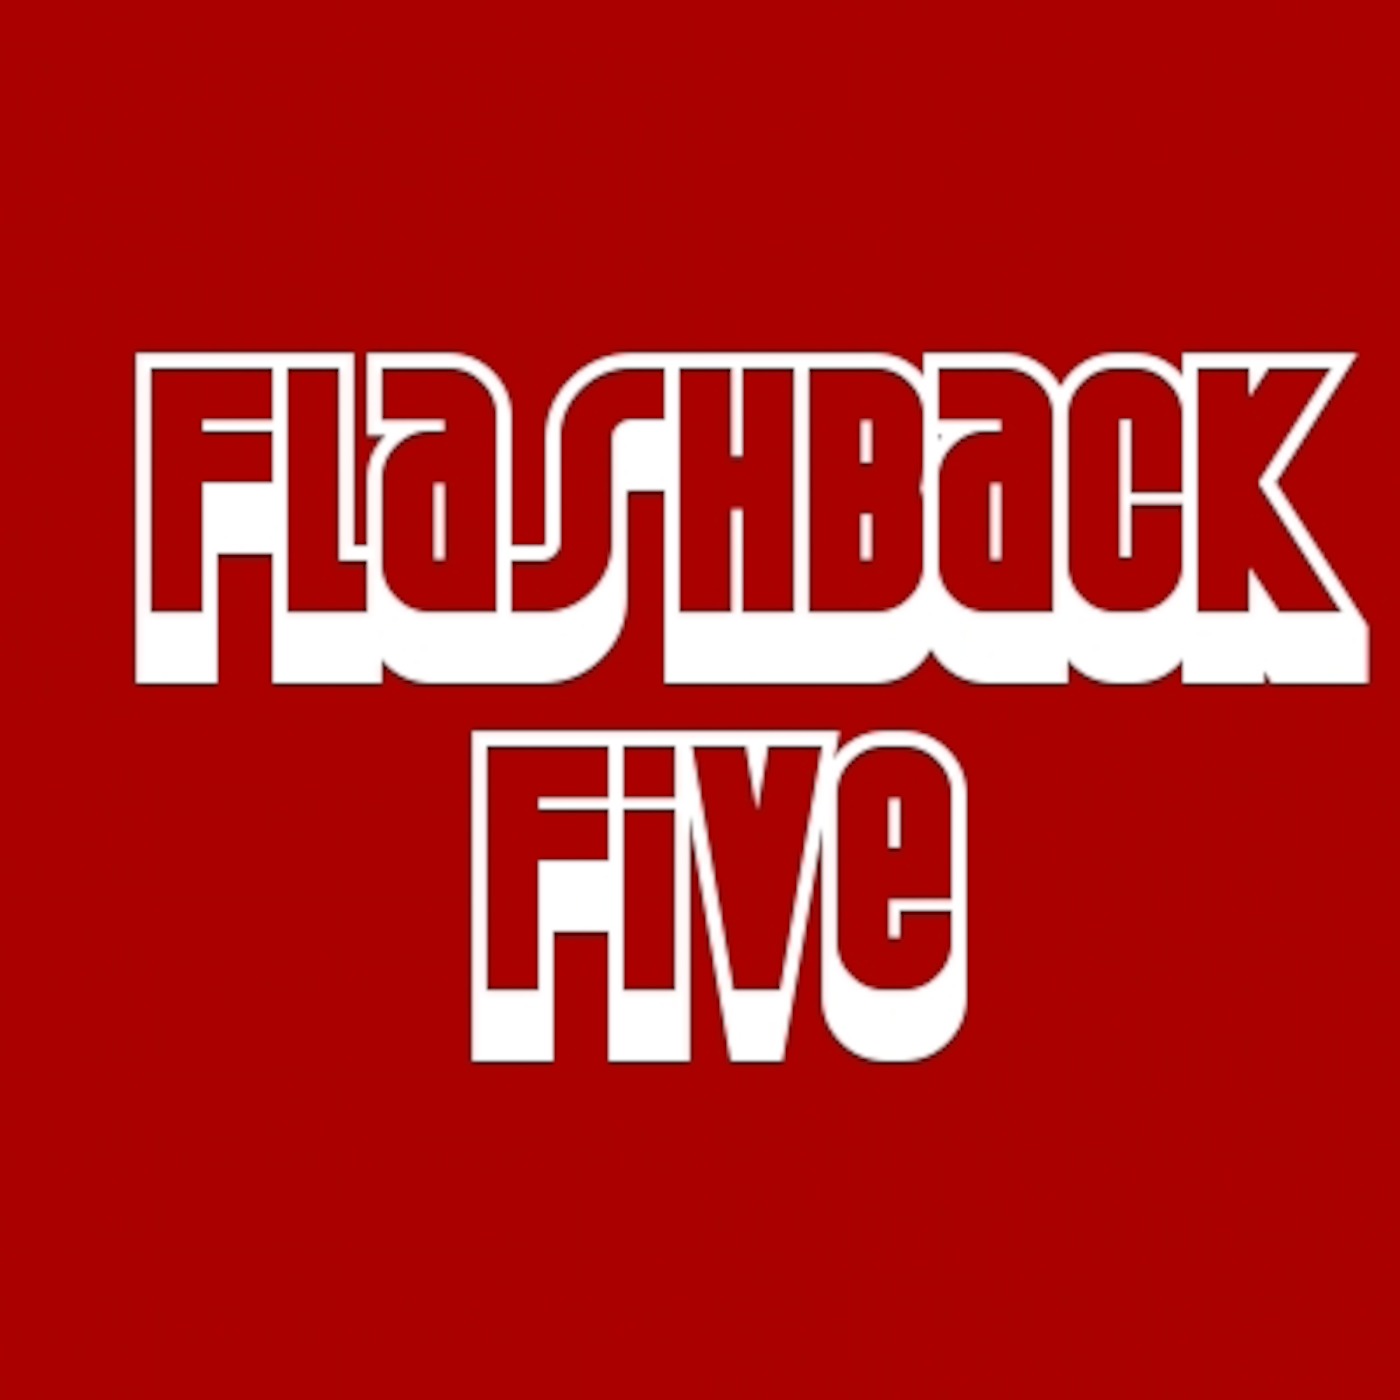 Flashback Five Episode 1-Top 5 Favorite Games